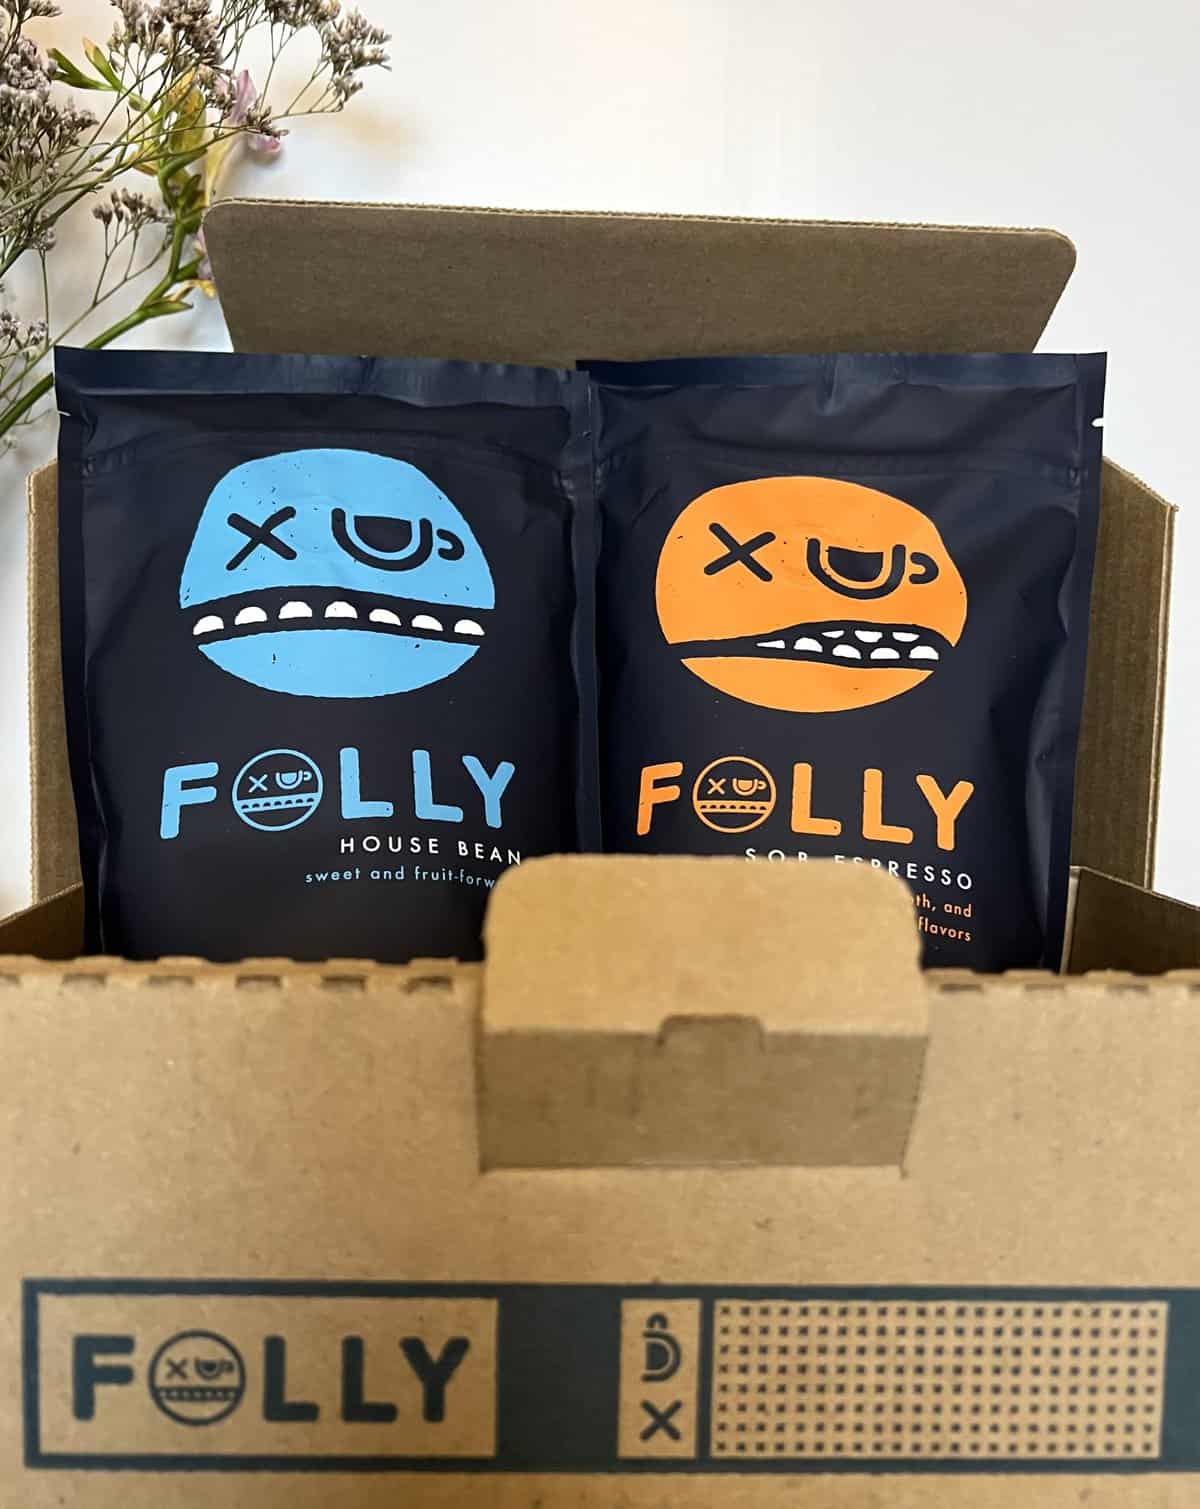 Folly Coffee open box